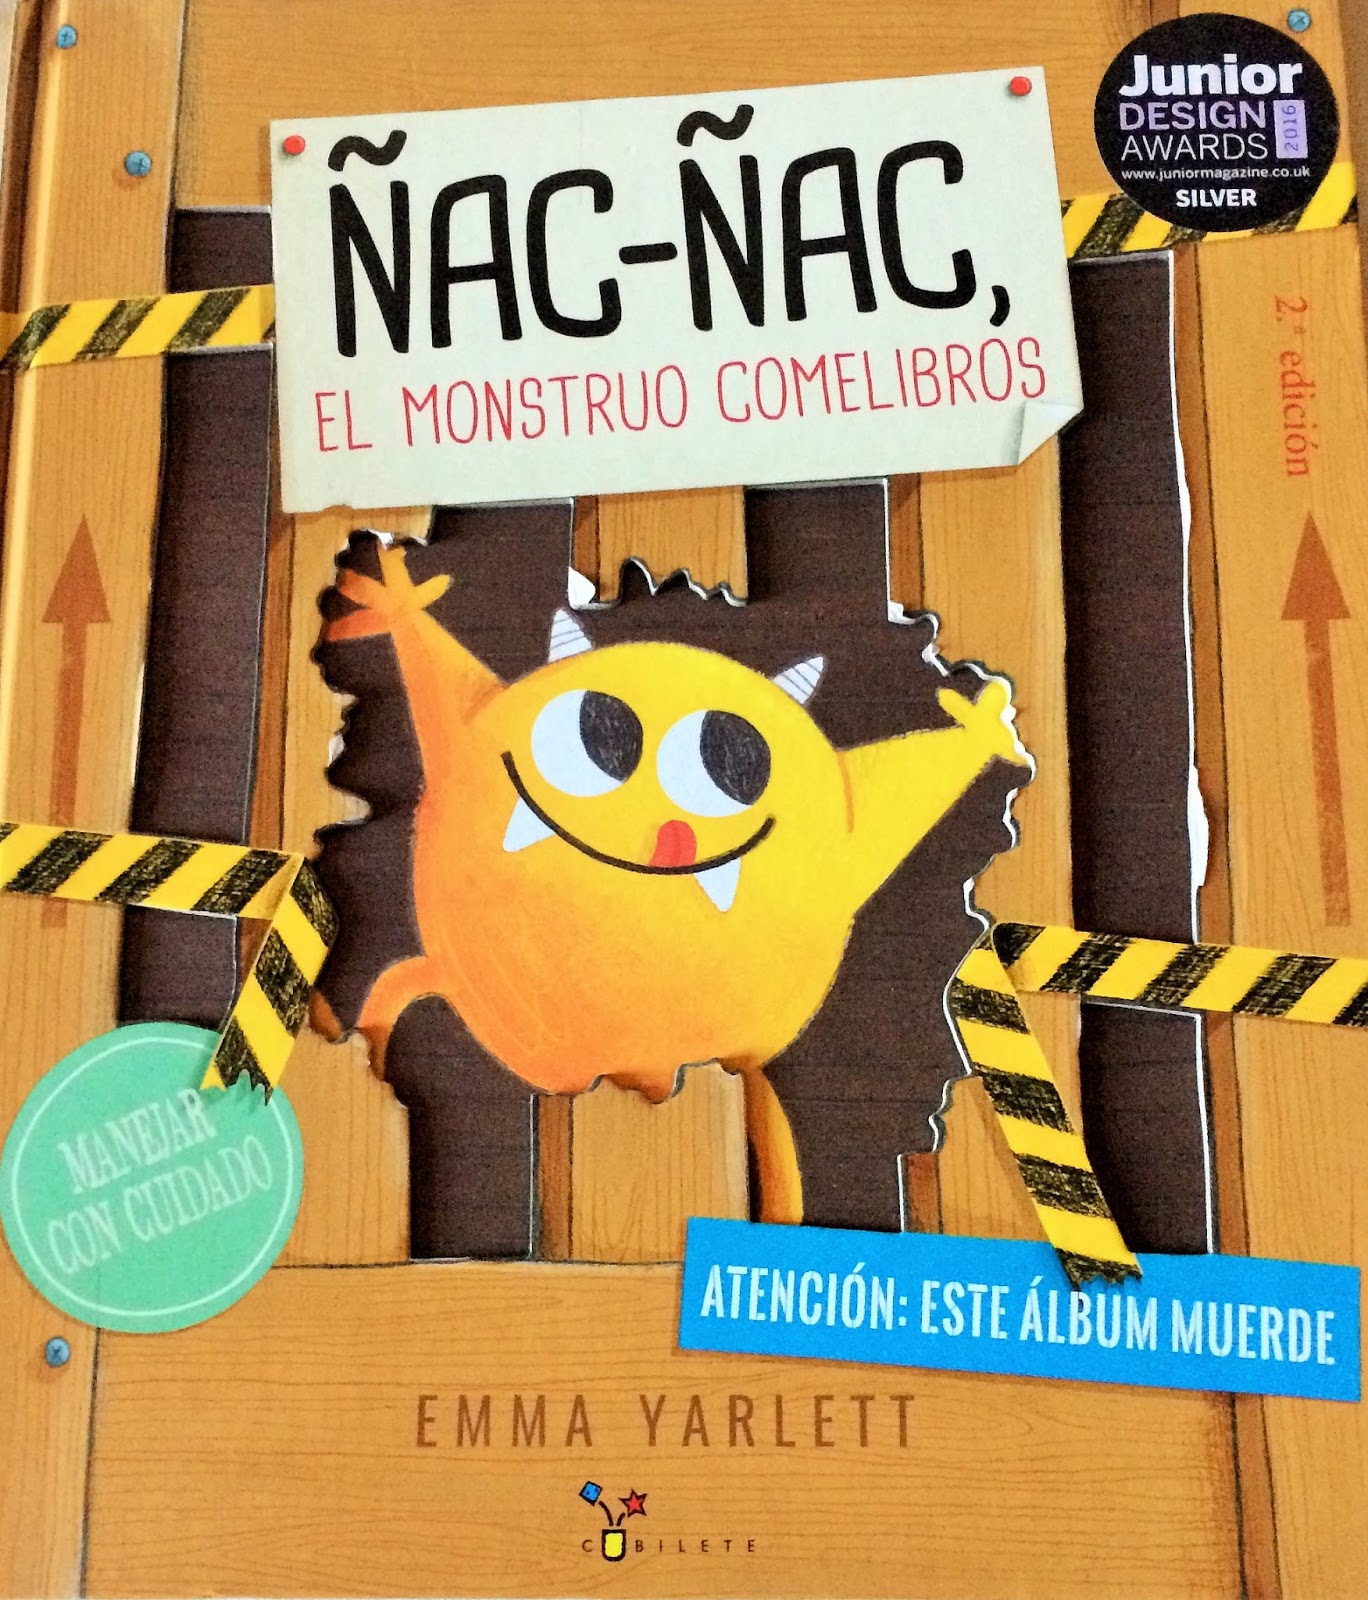 LOS LIBROS DE RAFAEL: Ñac-Ñac. El monstruo comelibros, de Emma Yarlett  [Cubilete]